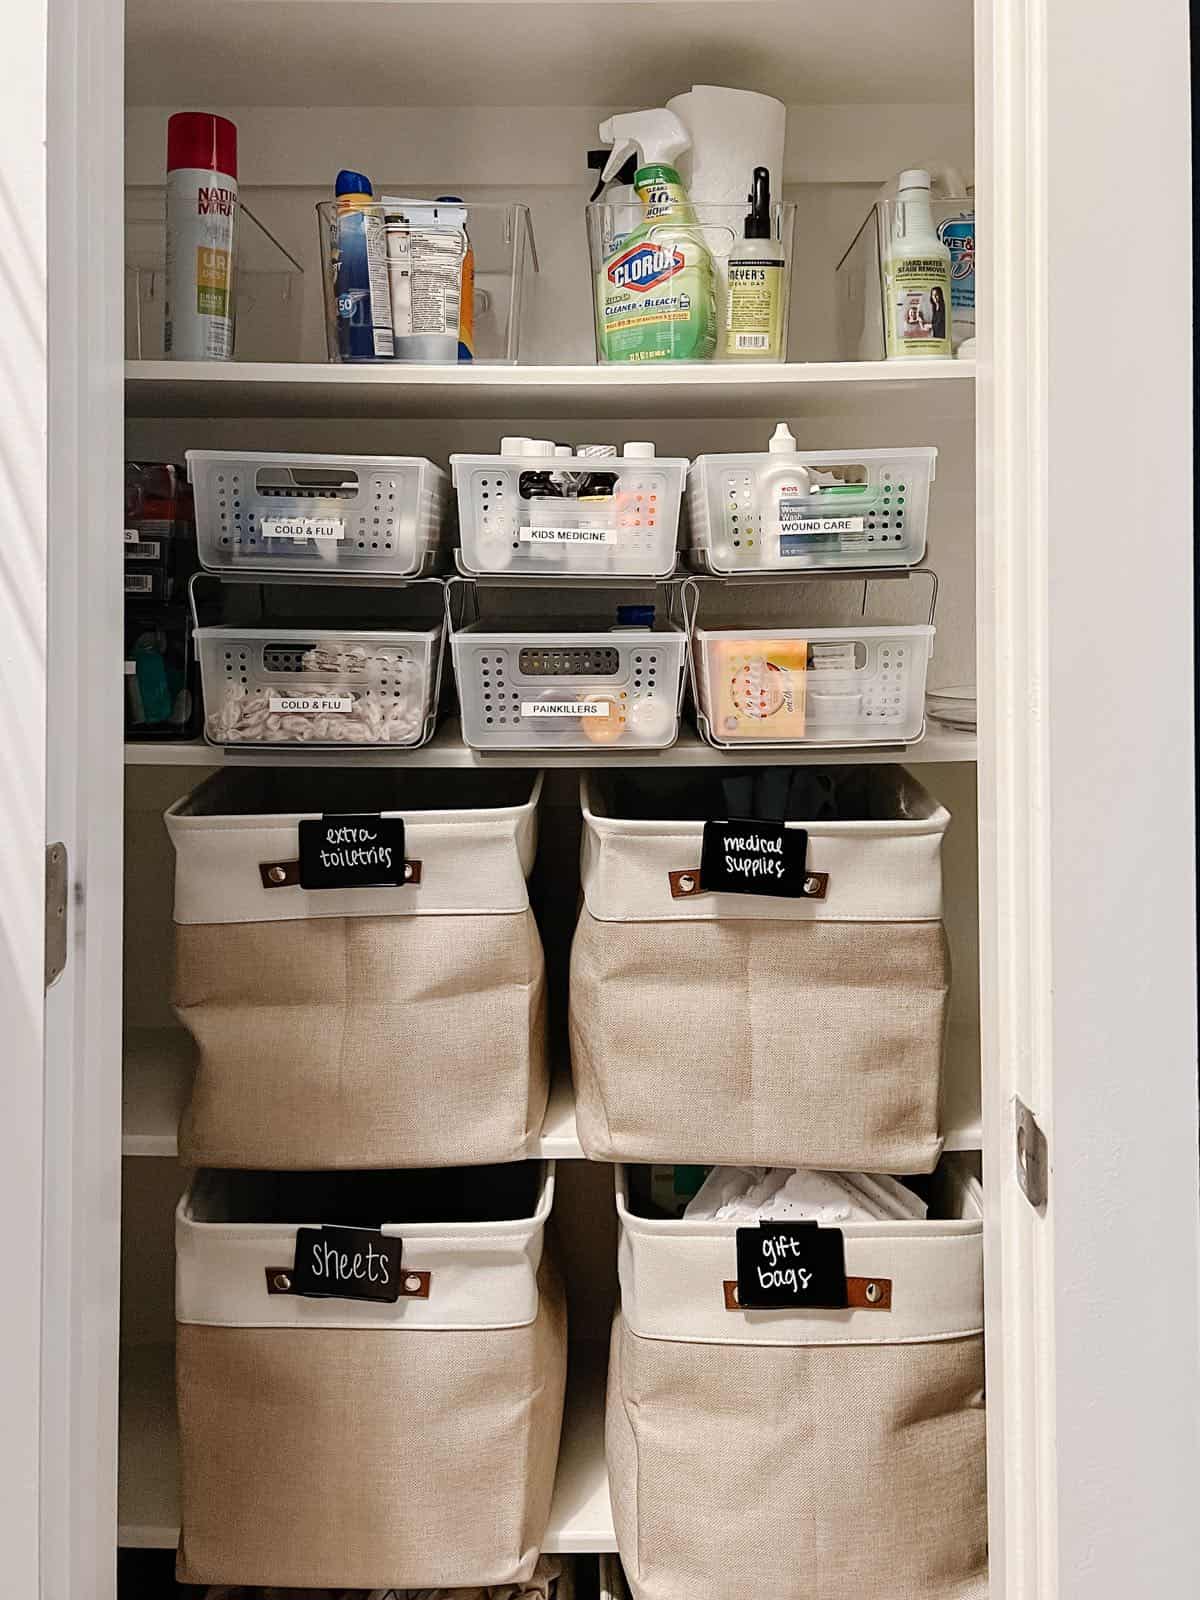 How to Organize a Bathroom Closet